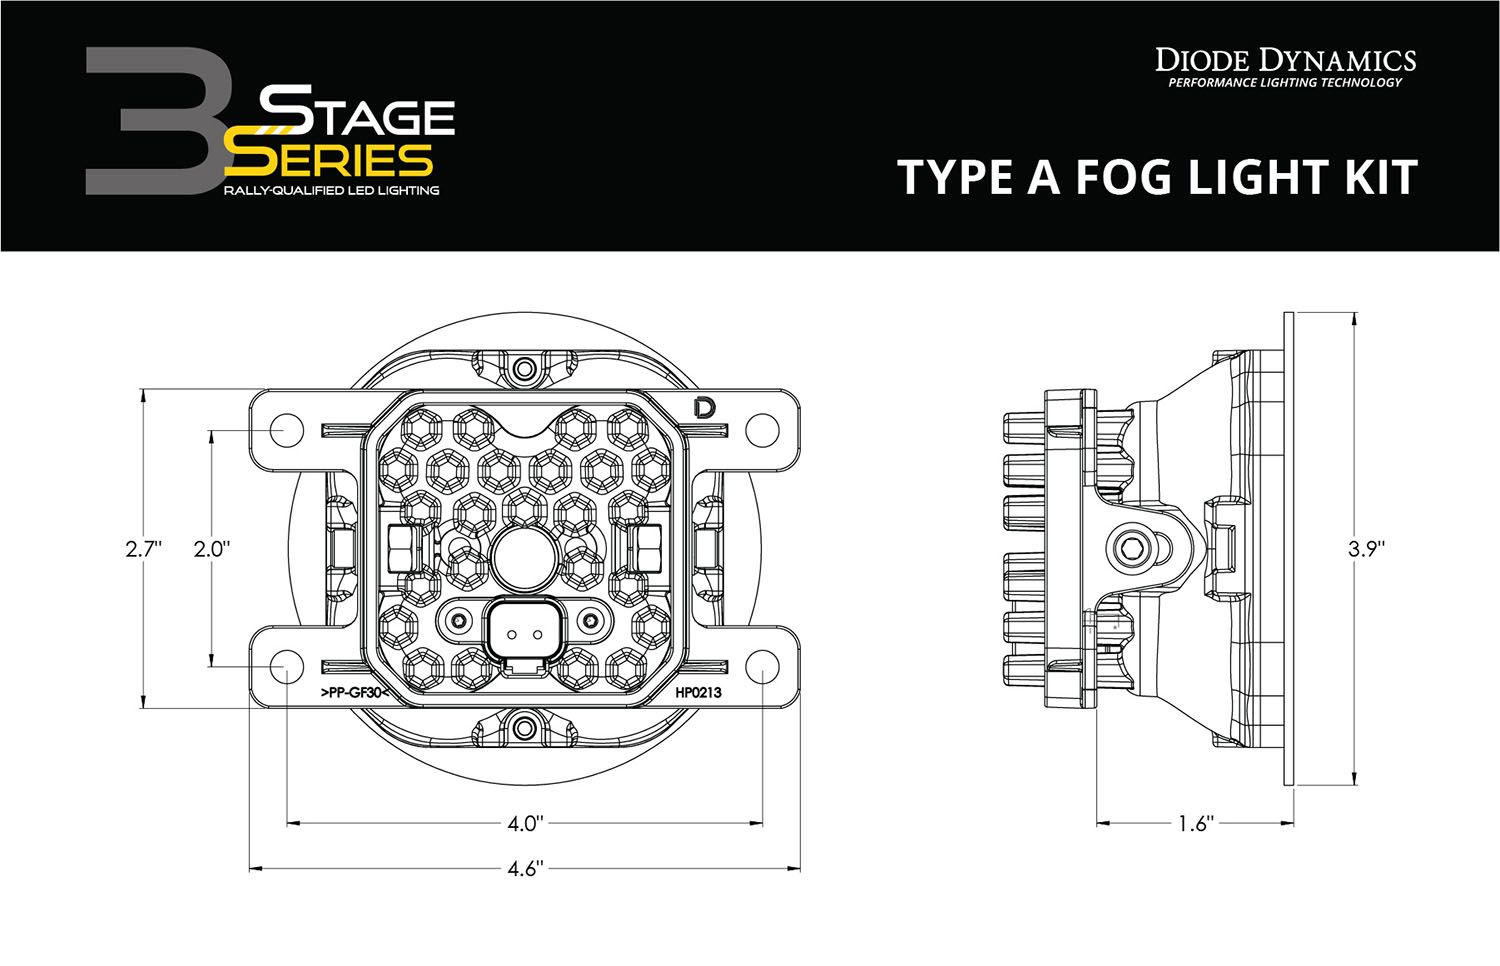 SS3 LED Fog Light Kit For 2014-2018 Subaru Forester